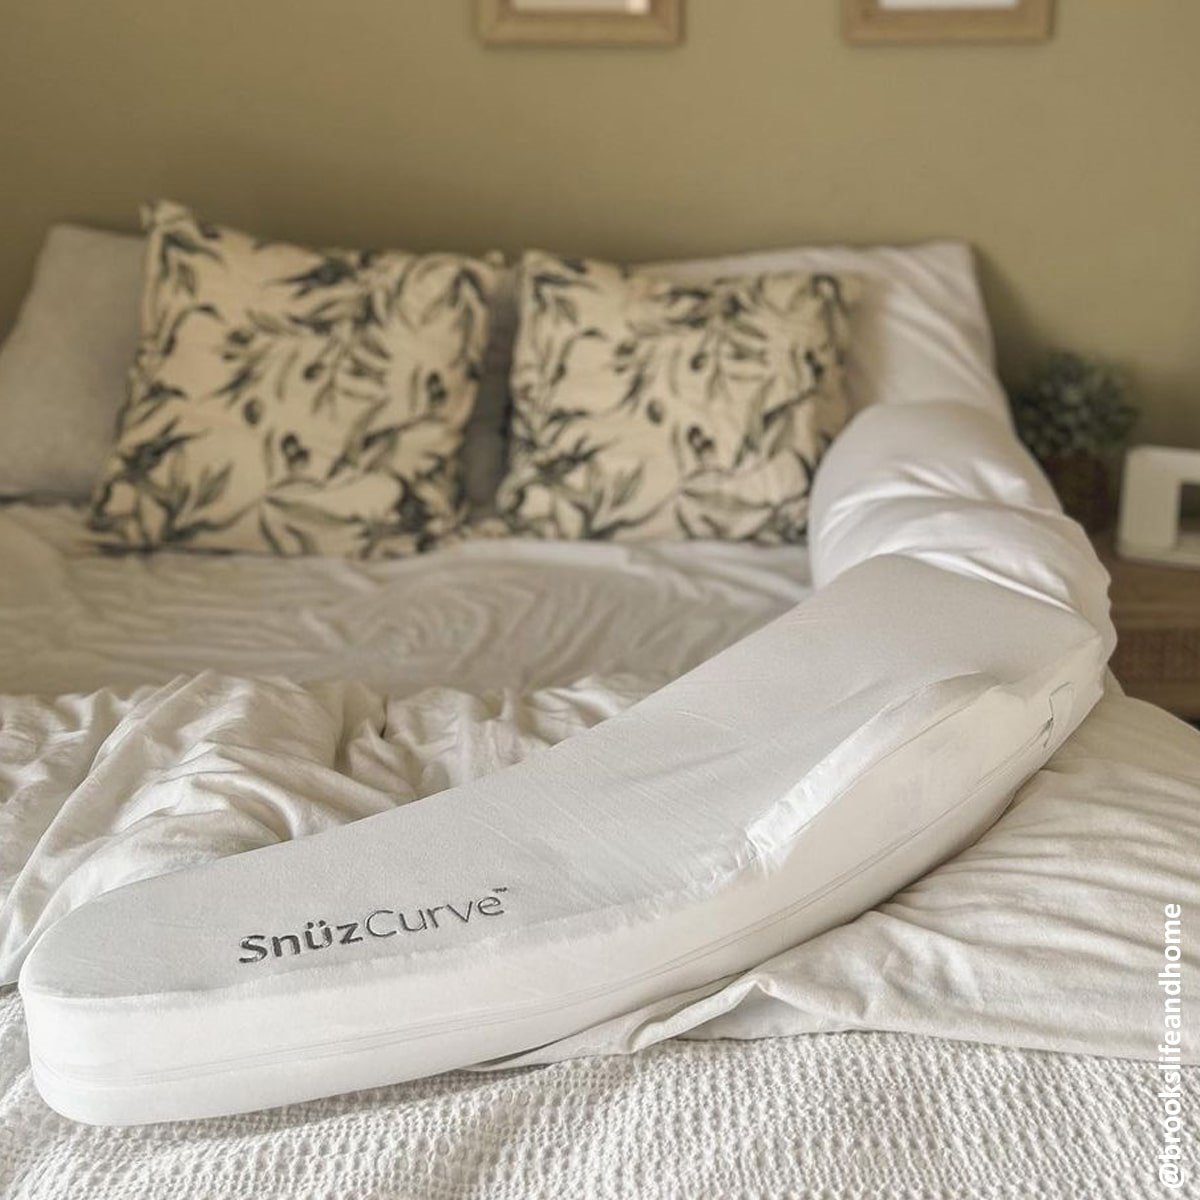 SnuzCurve Pregnancy Pillow, Sleep Aids, Snuz